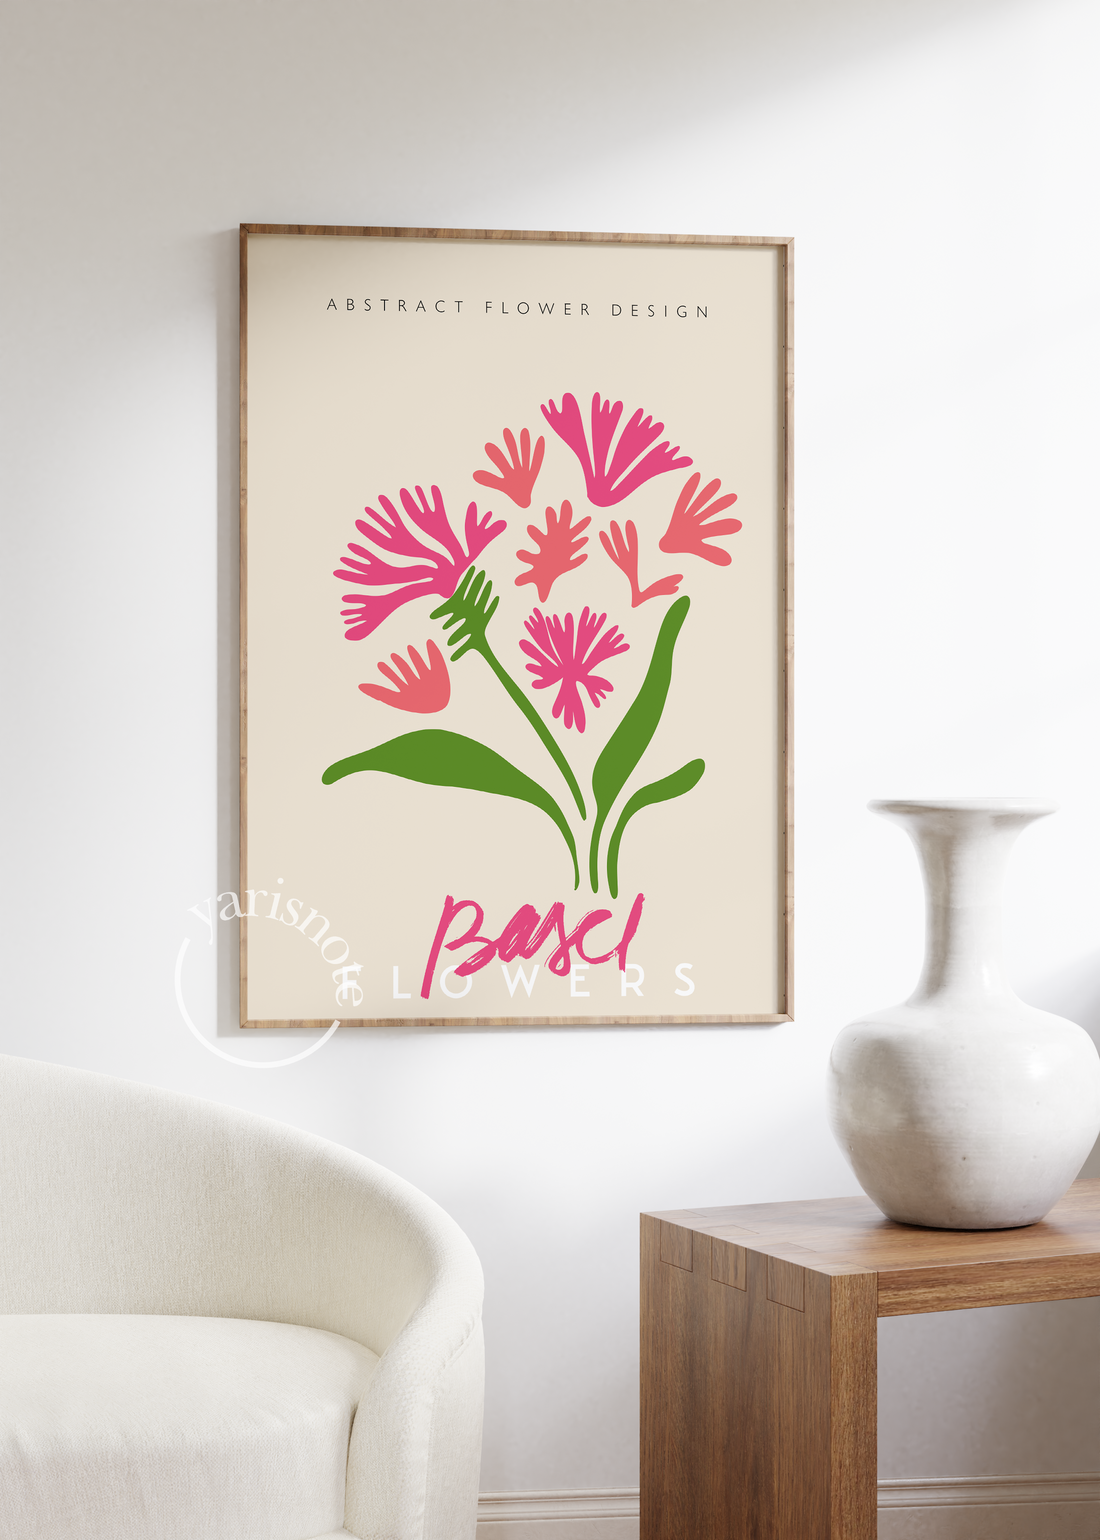 Basel Flowers Unframed Poster